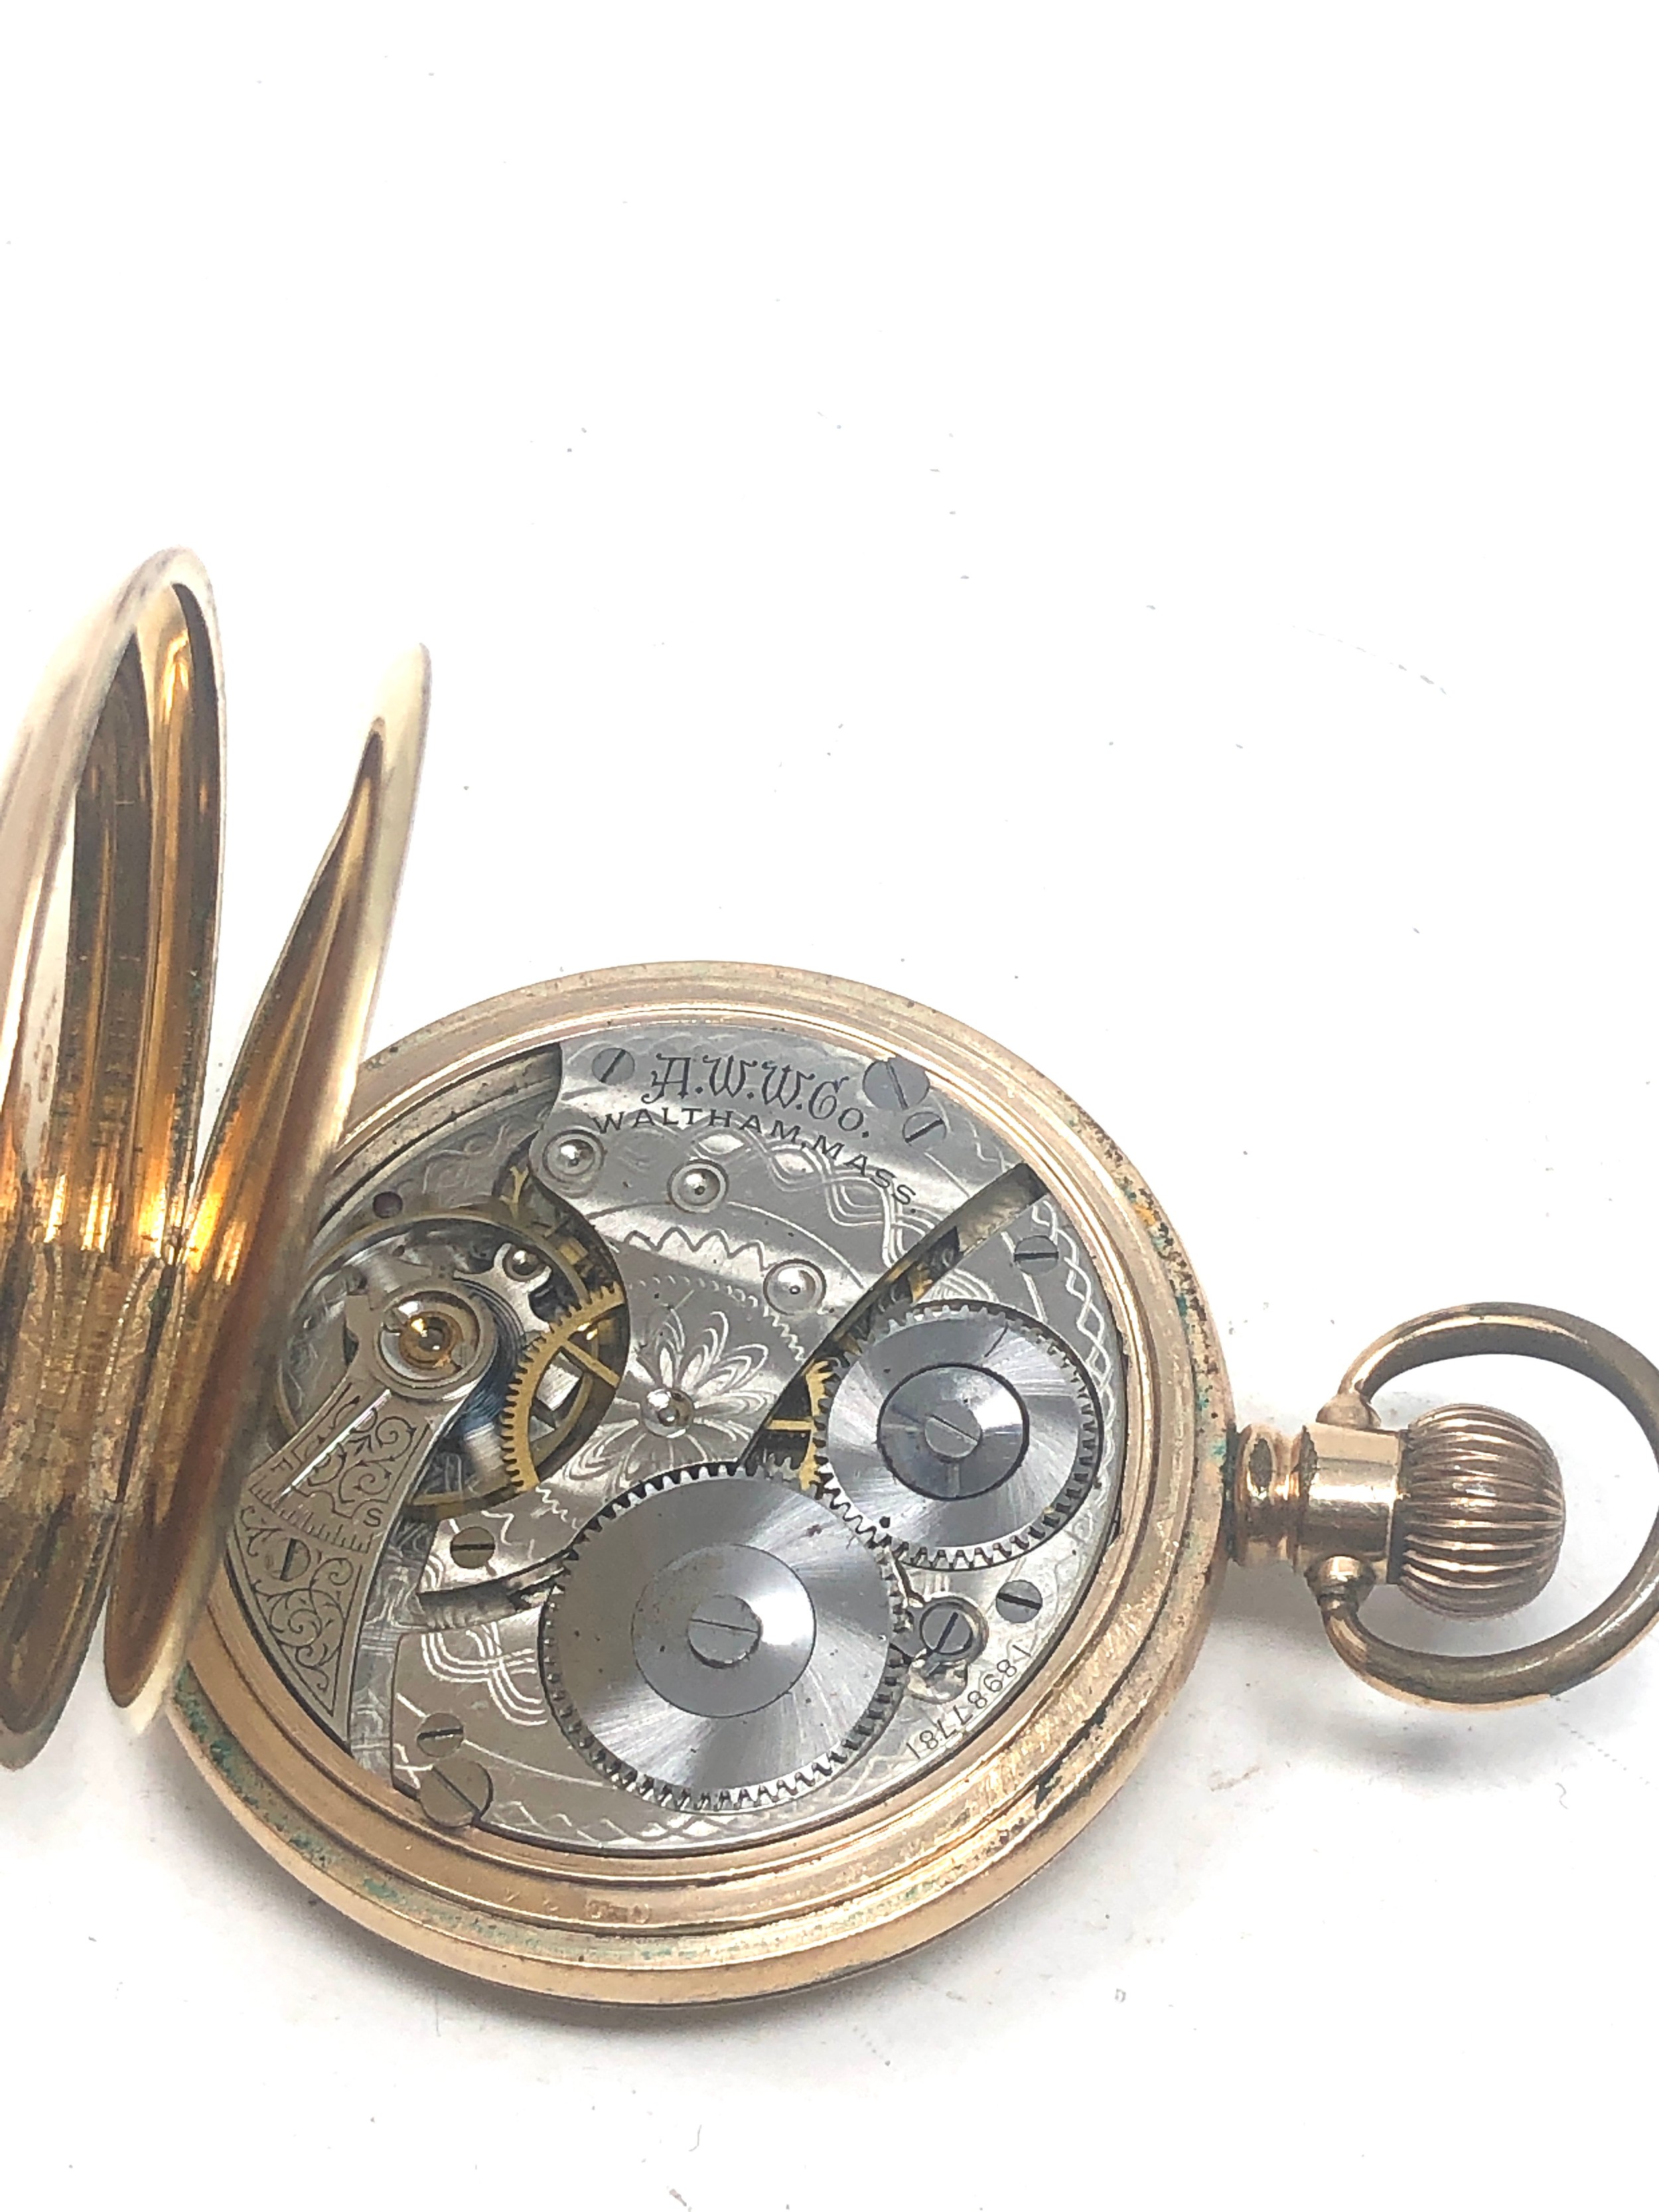 Gold plated half hunter waltham pocket watch the watch is ticking - Bild 3 aus 3